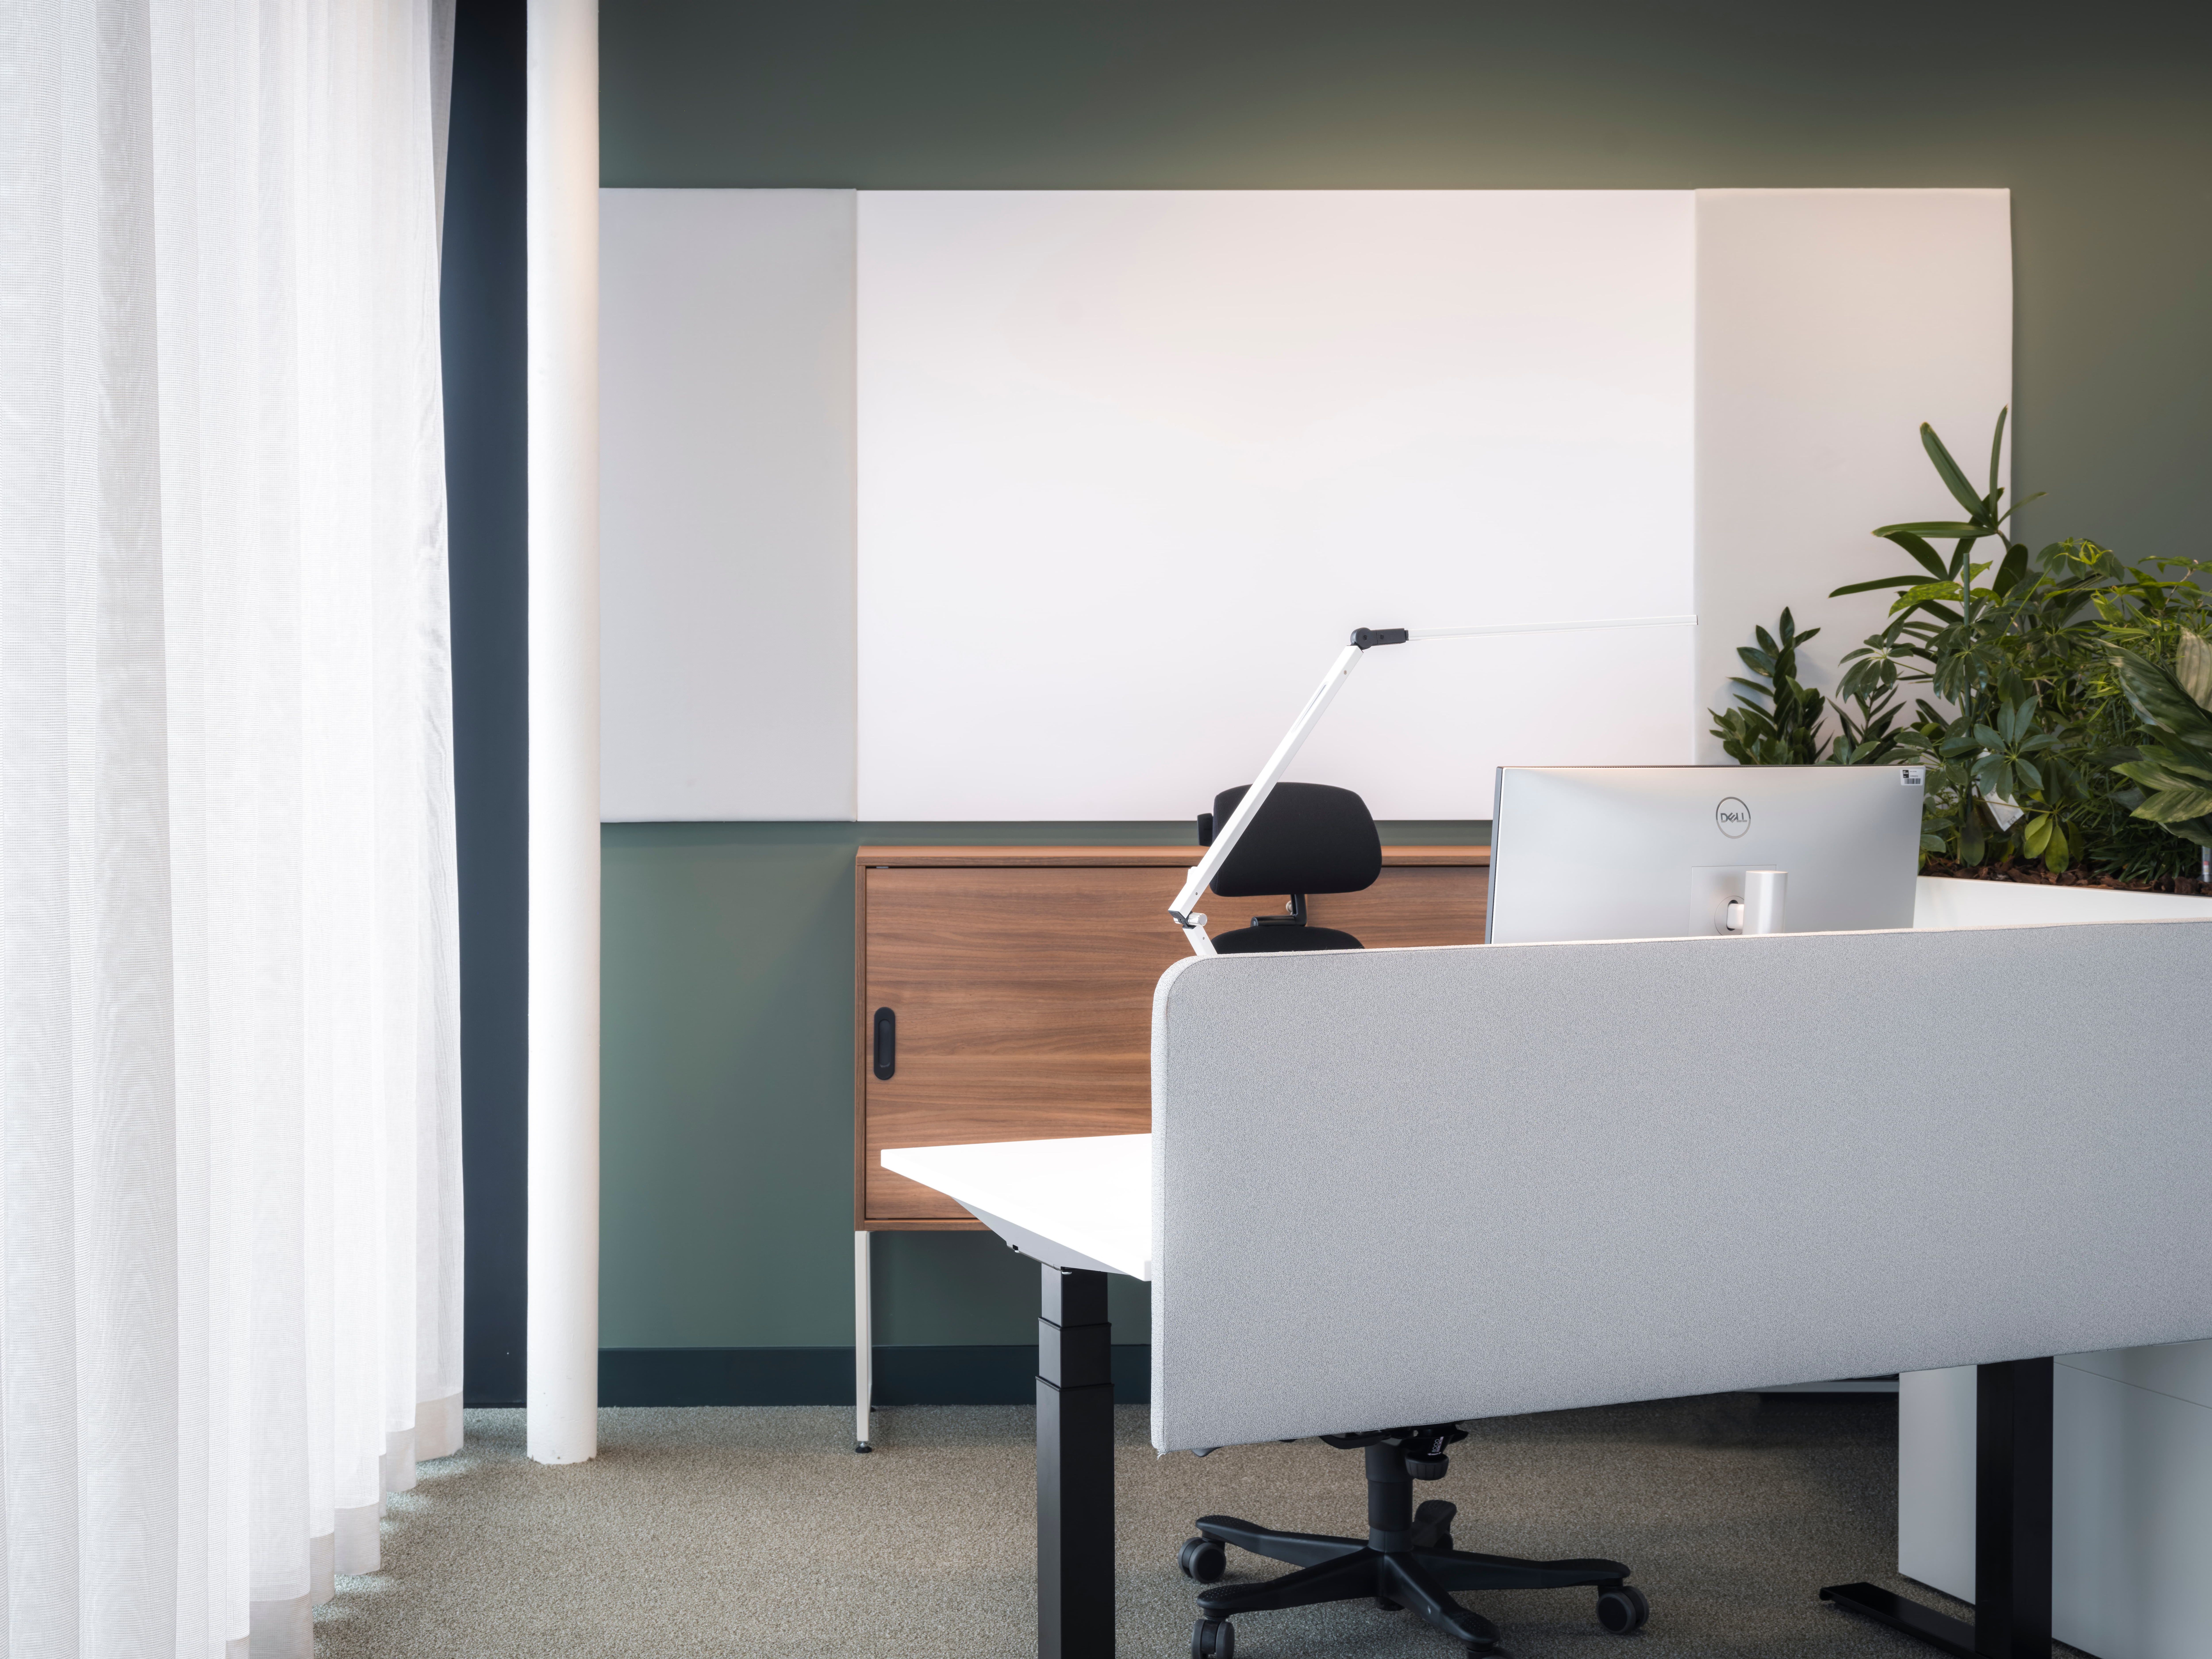 Werkruimte met wit bureau, computer, zwarte bureaustoel en groene muur op de achtergrond. Plant in de rechterhoek.